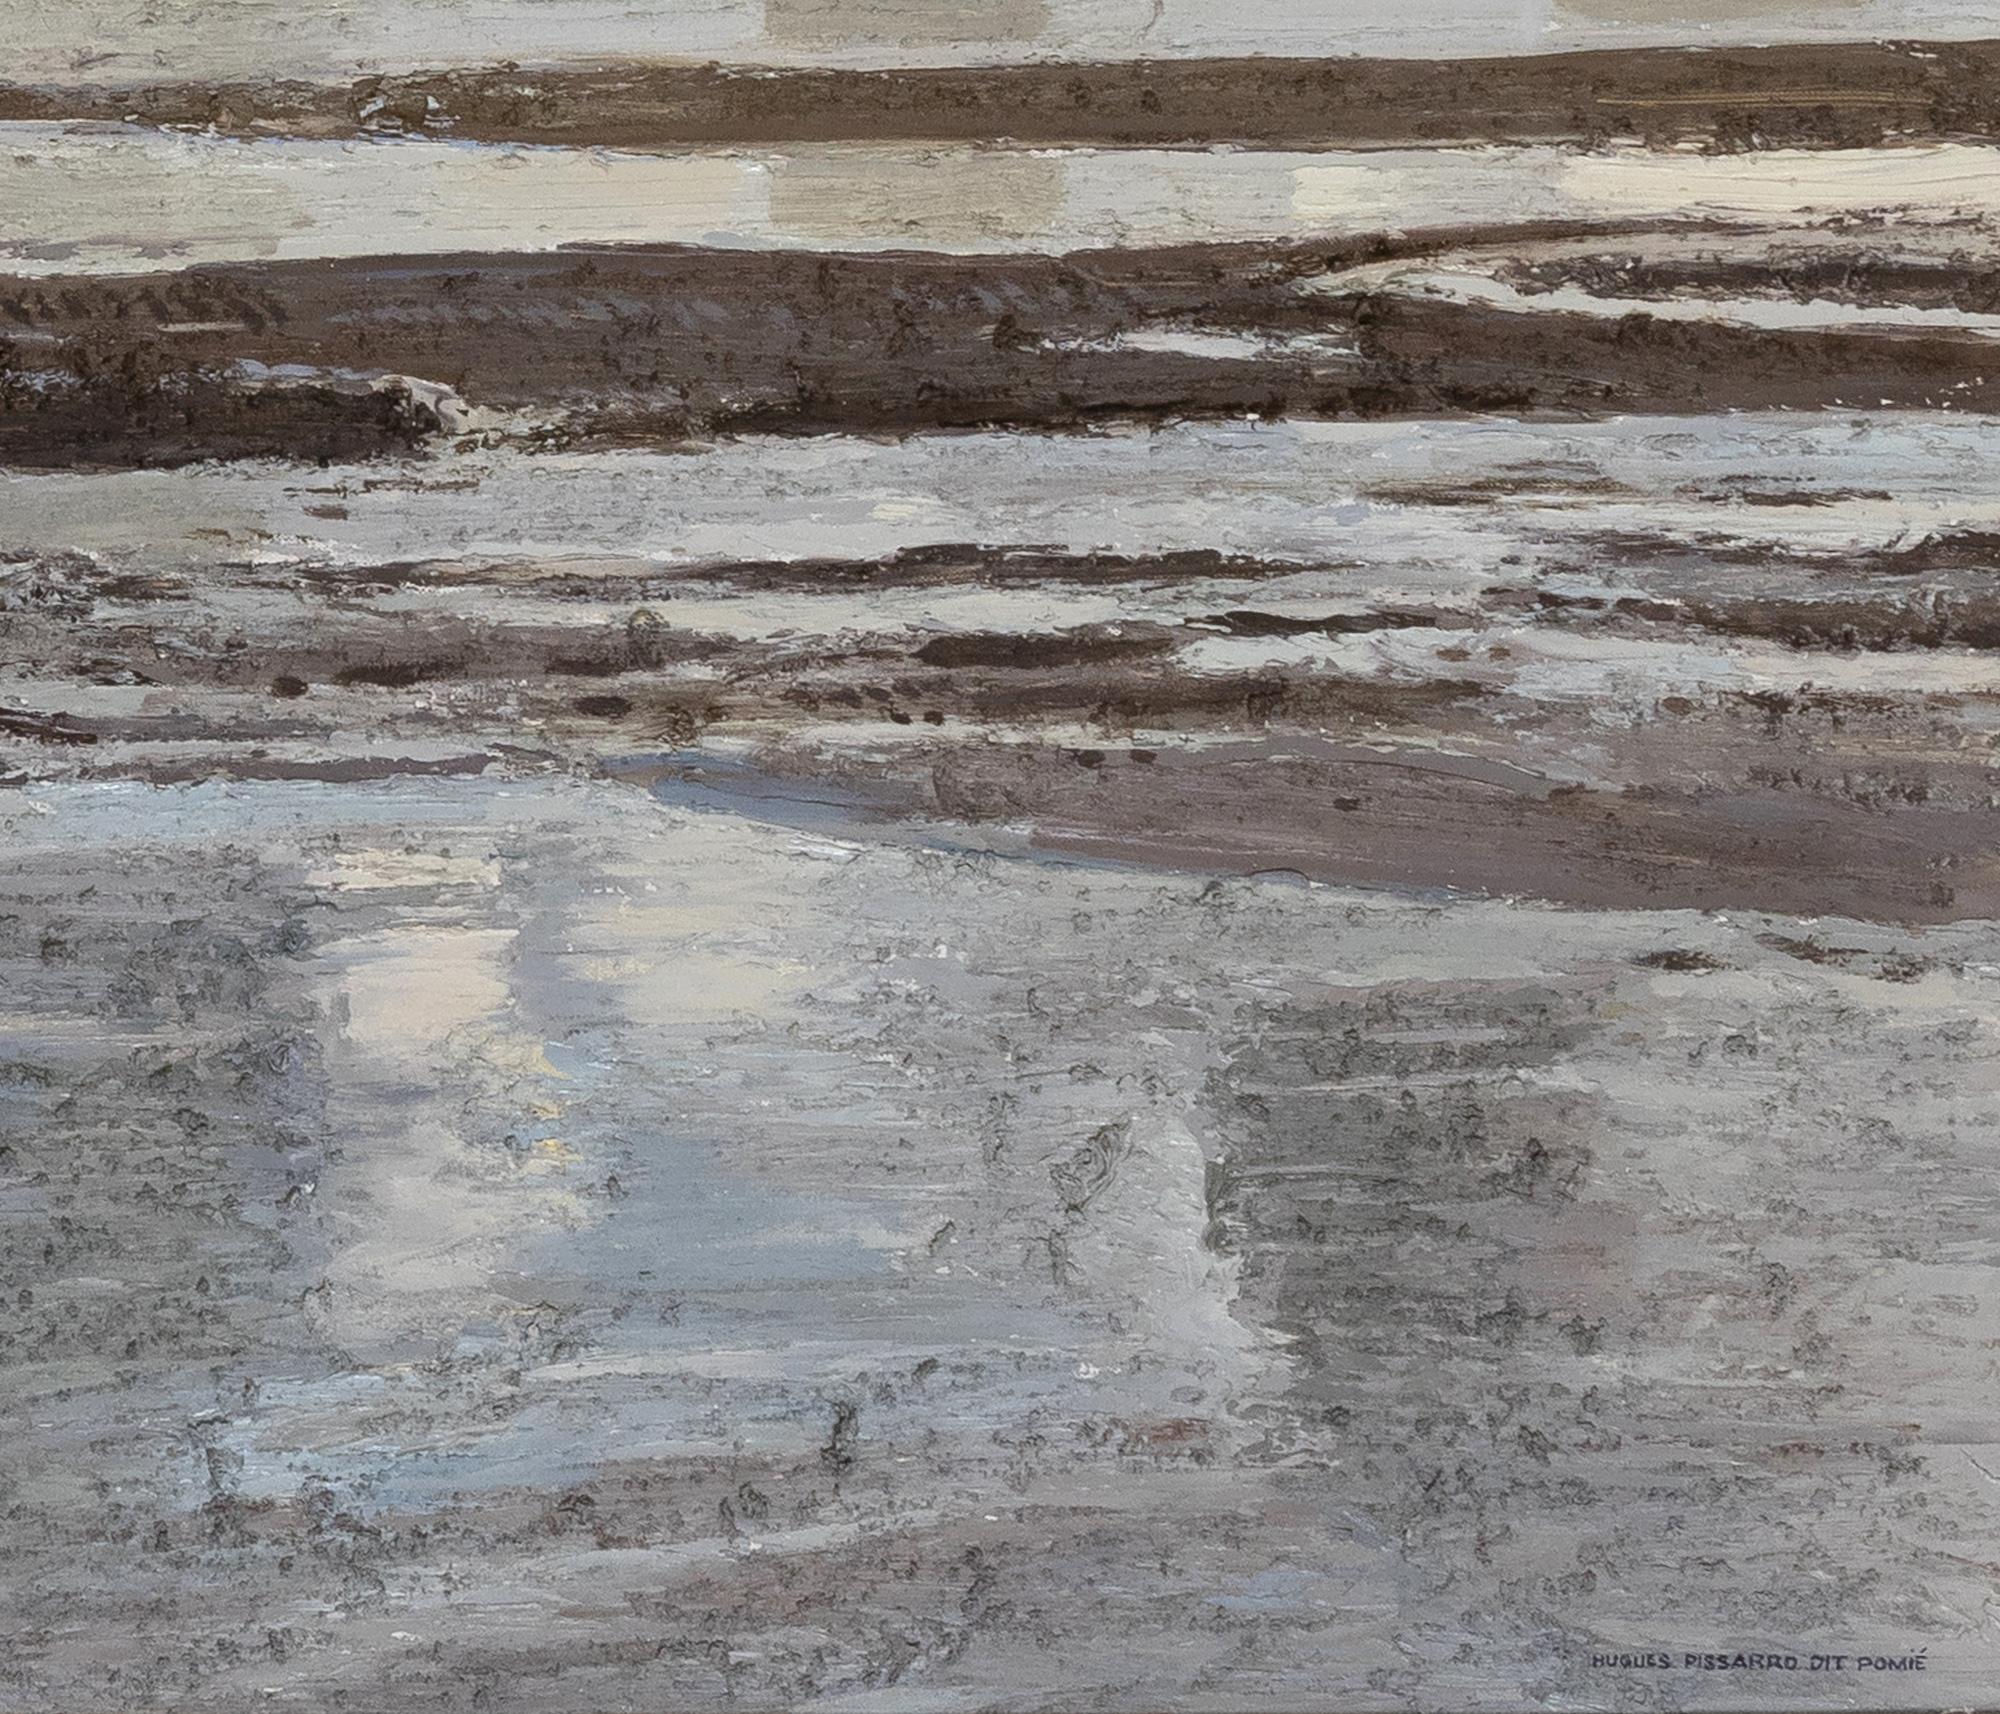 Petite Marine Grise by Hugues Pissarro dit Pomié - Oil painting, Landscape - Gray Landscape Painting by Hughes Claude Pissarro